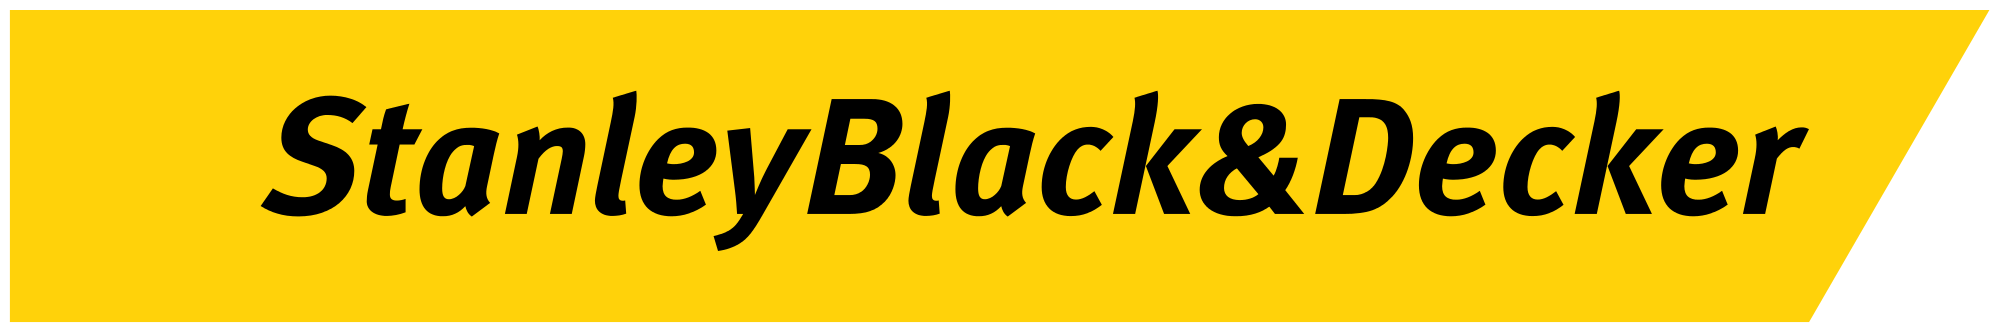 Black and Decker Logo - Stanley Black & Decker Logo.svg